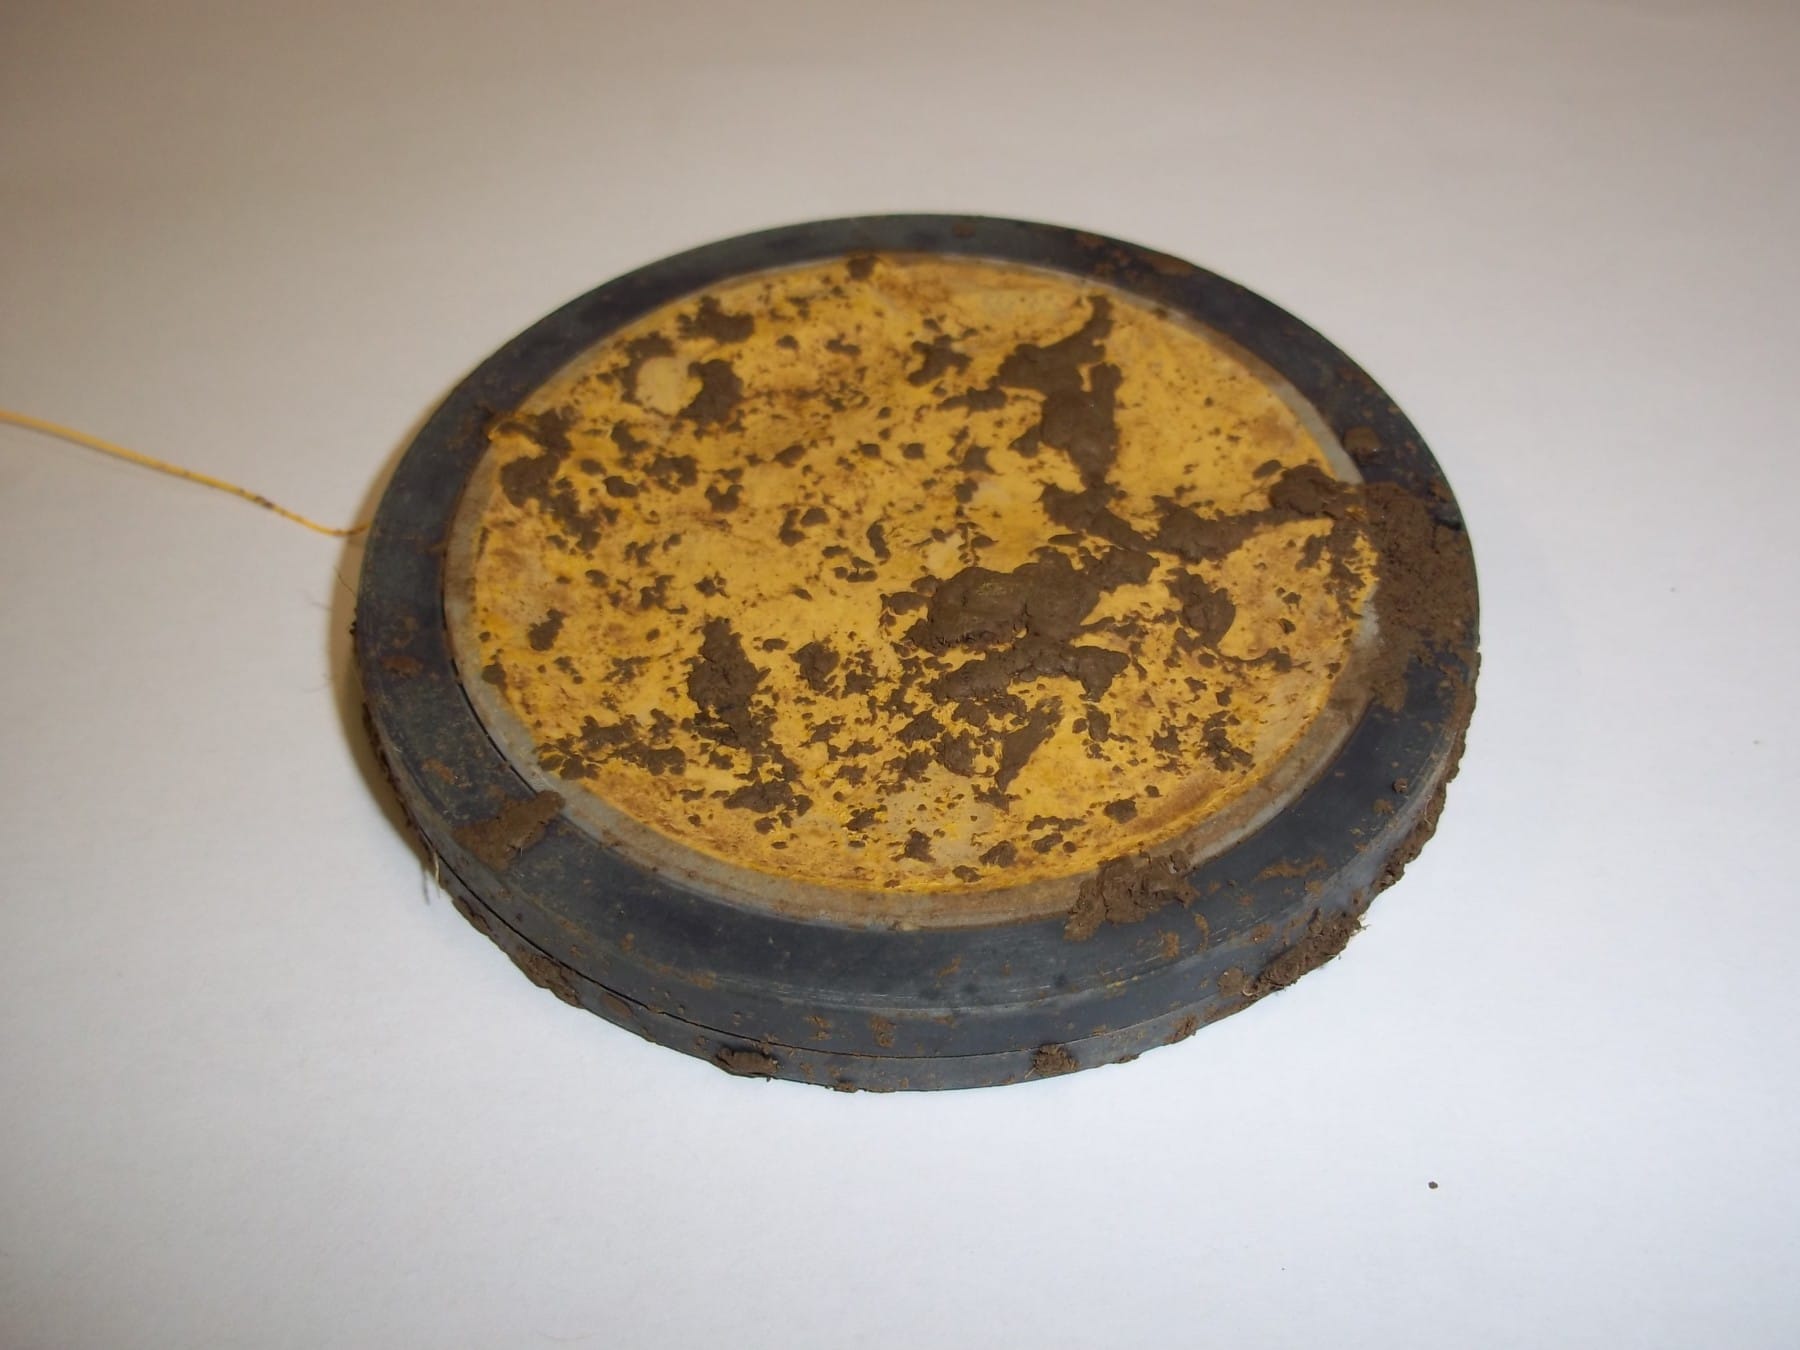 Abbildung: Das Foto zeigt einen auf einem Tisch liegenden flachen runden Mineral-Container nach der Entnahme aus dem Boden. Auf dem Gehäuse und dem Netzbeutel mit der Bodensubstanz befinden sich Reste von Erde.